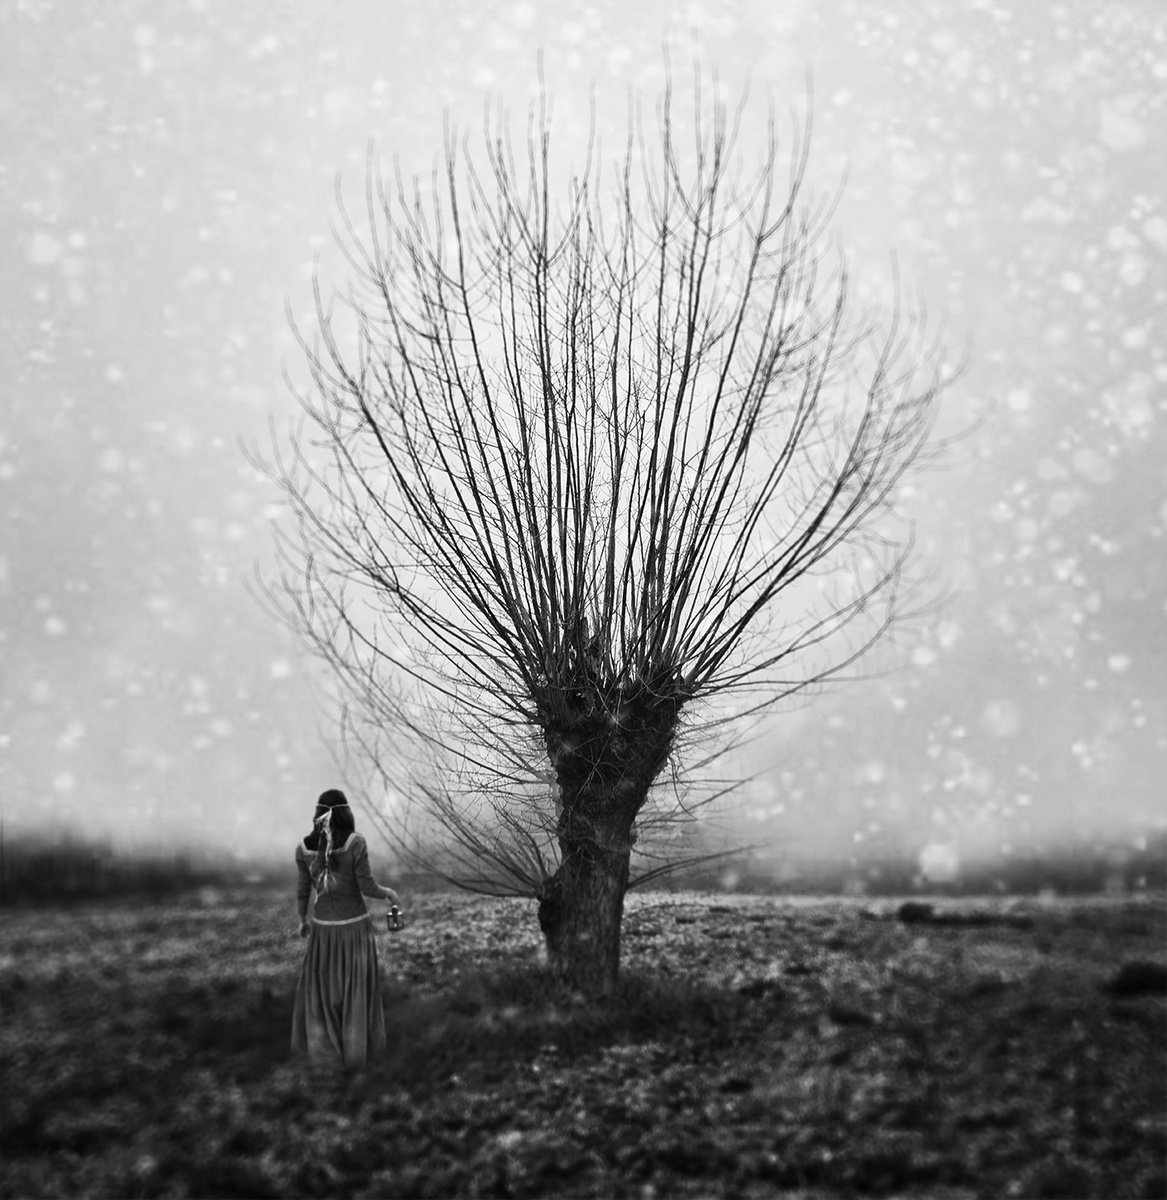 Winter Time by Carmelita Iezzi